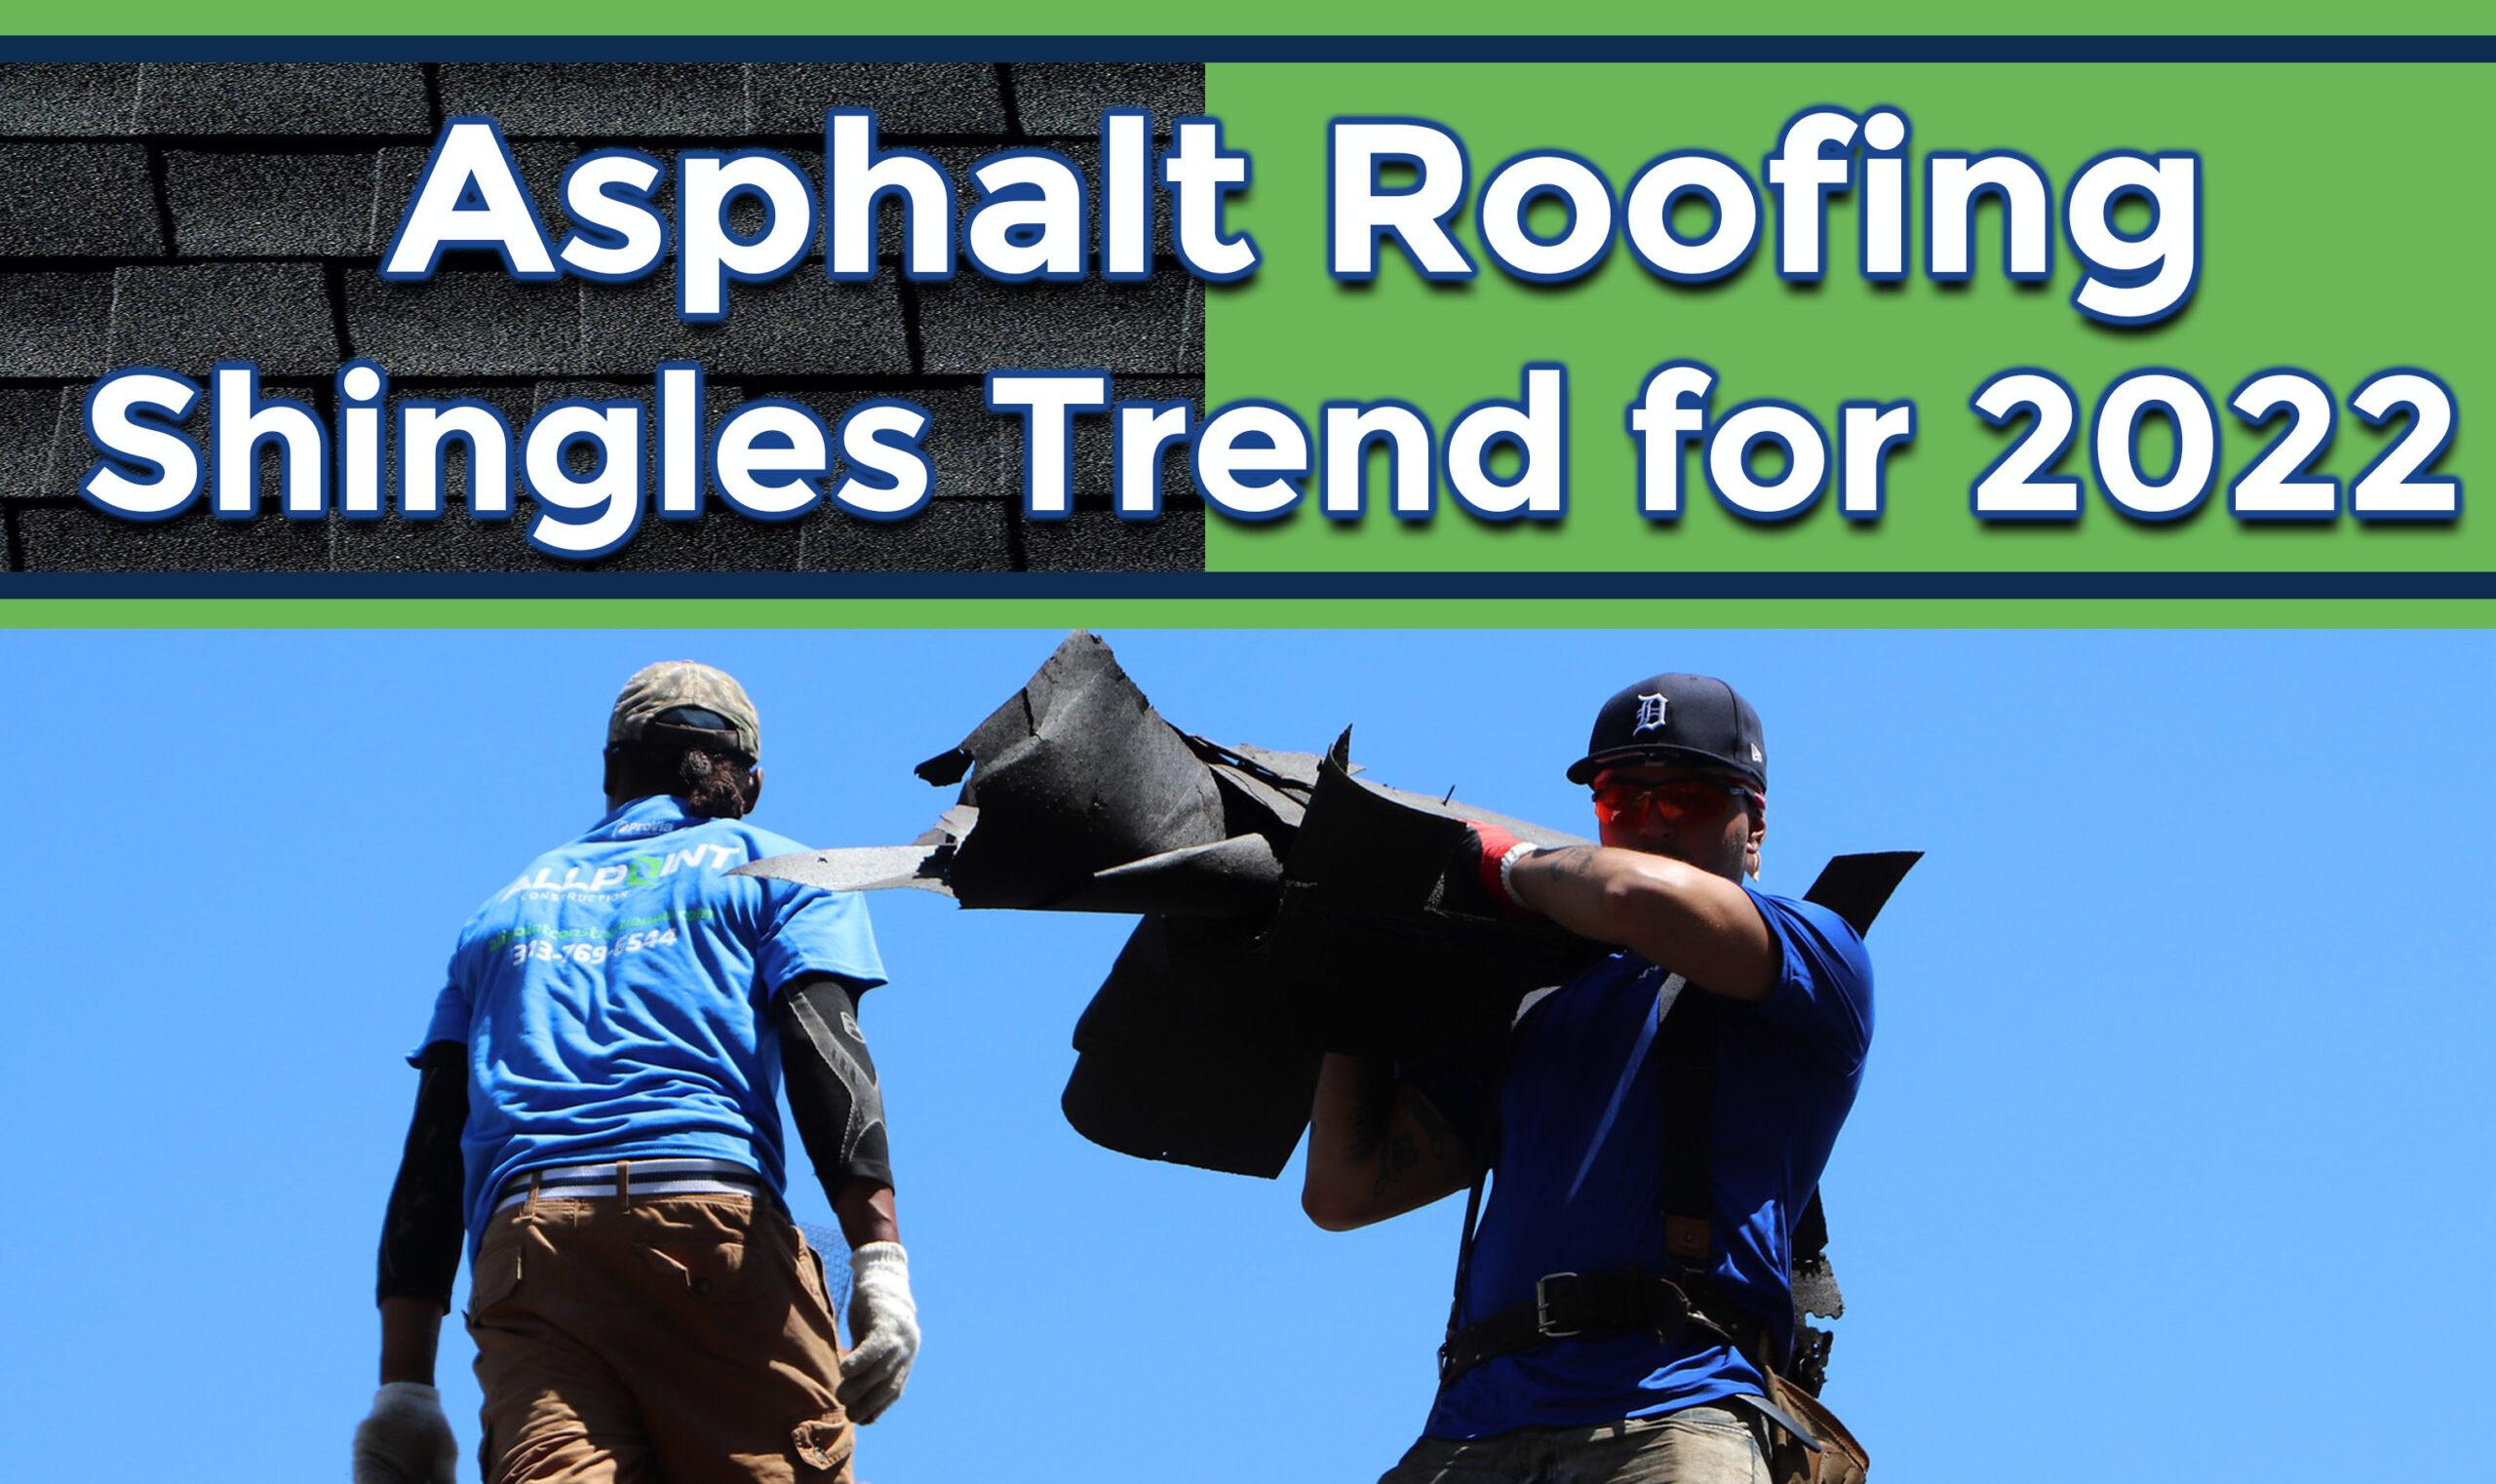 asphalt roofing shingles trend